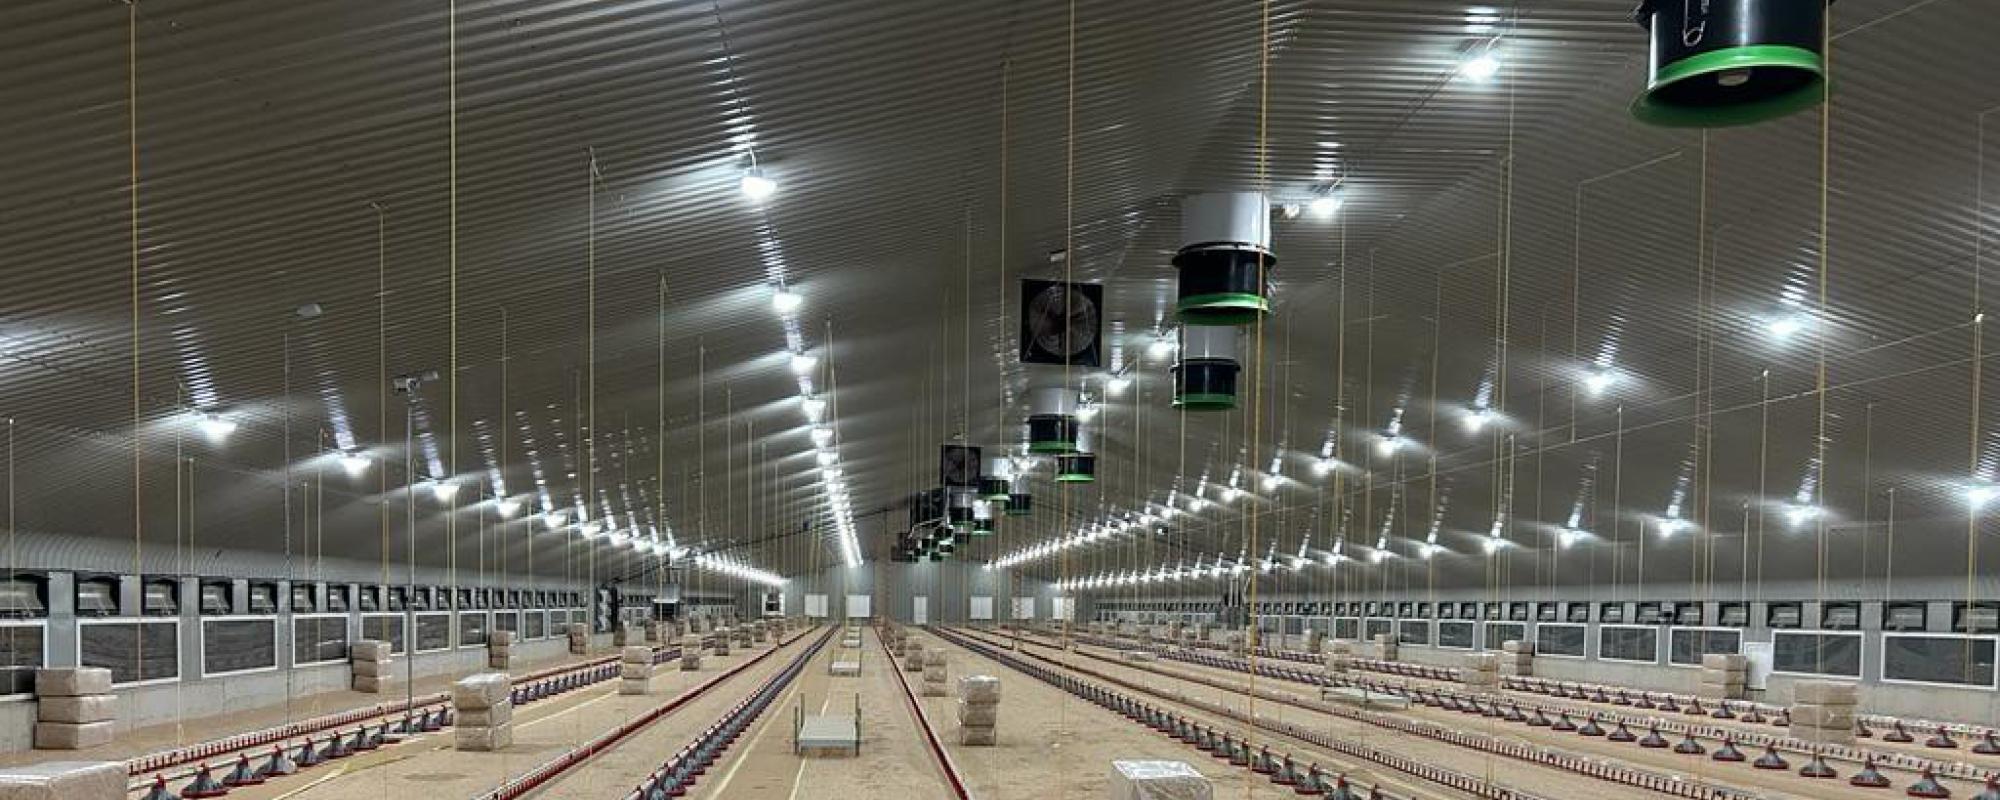 Agrarische verlichting voor de pluimveehouderij